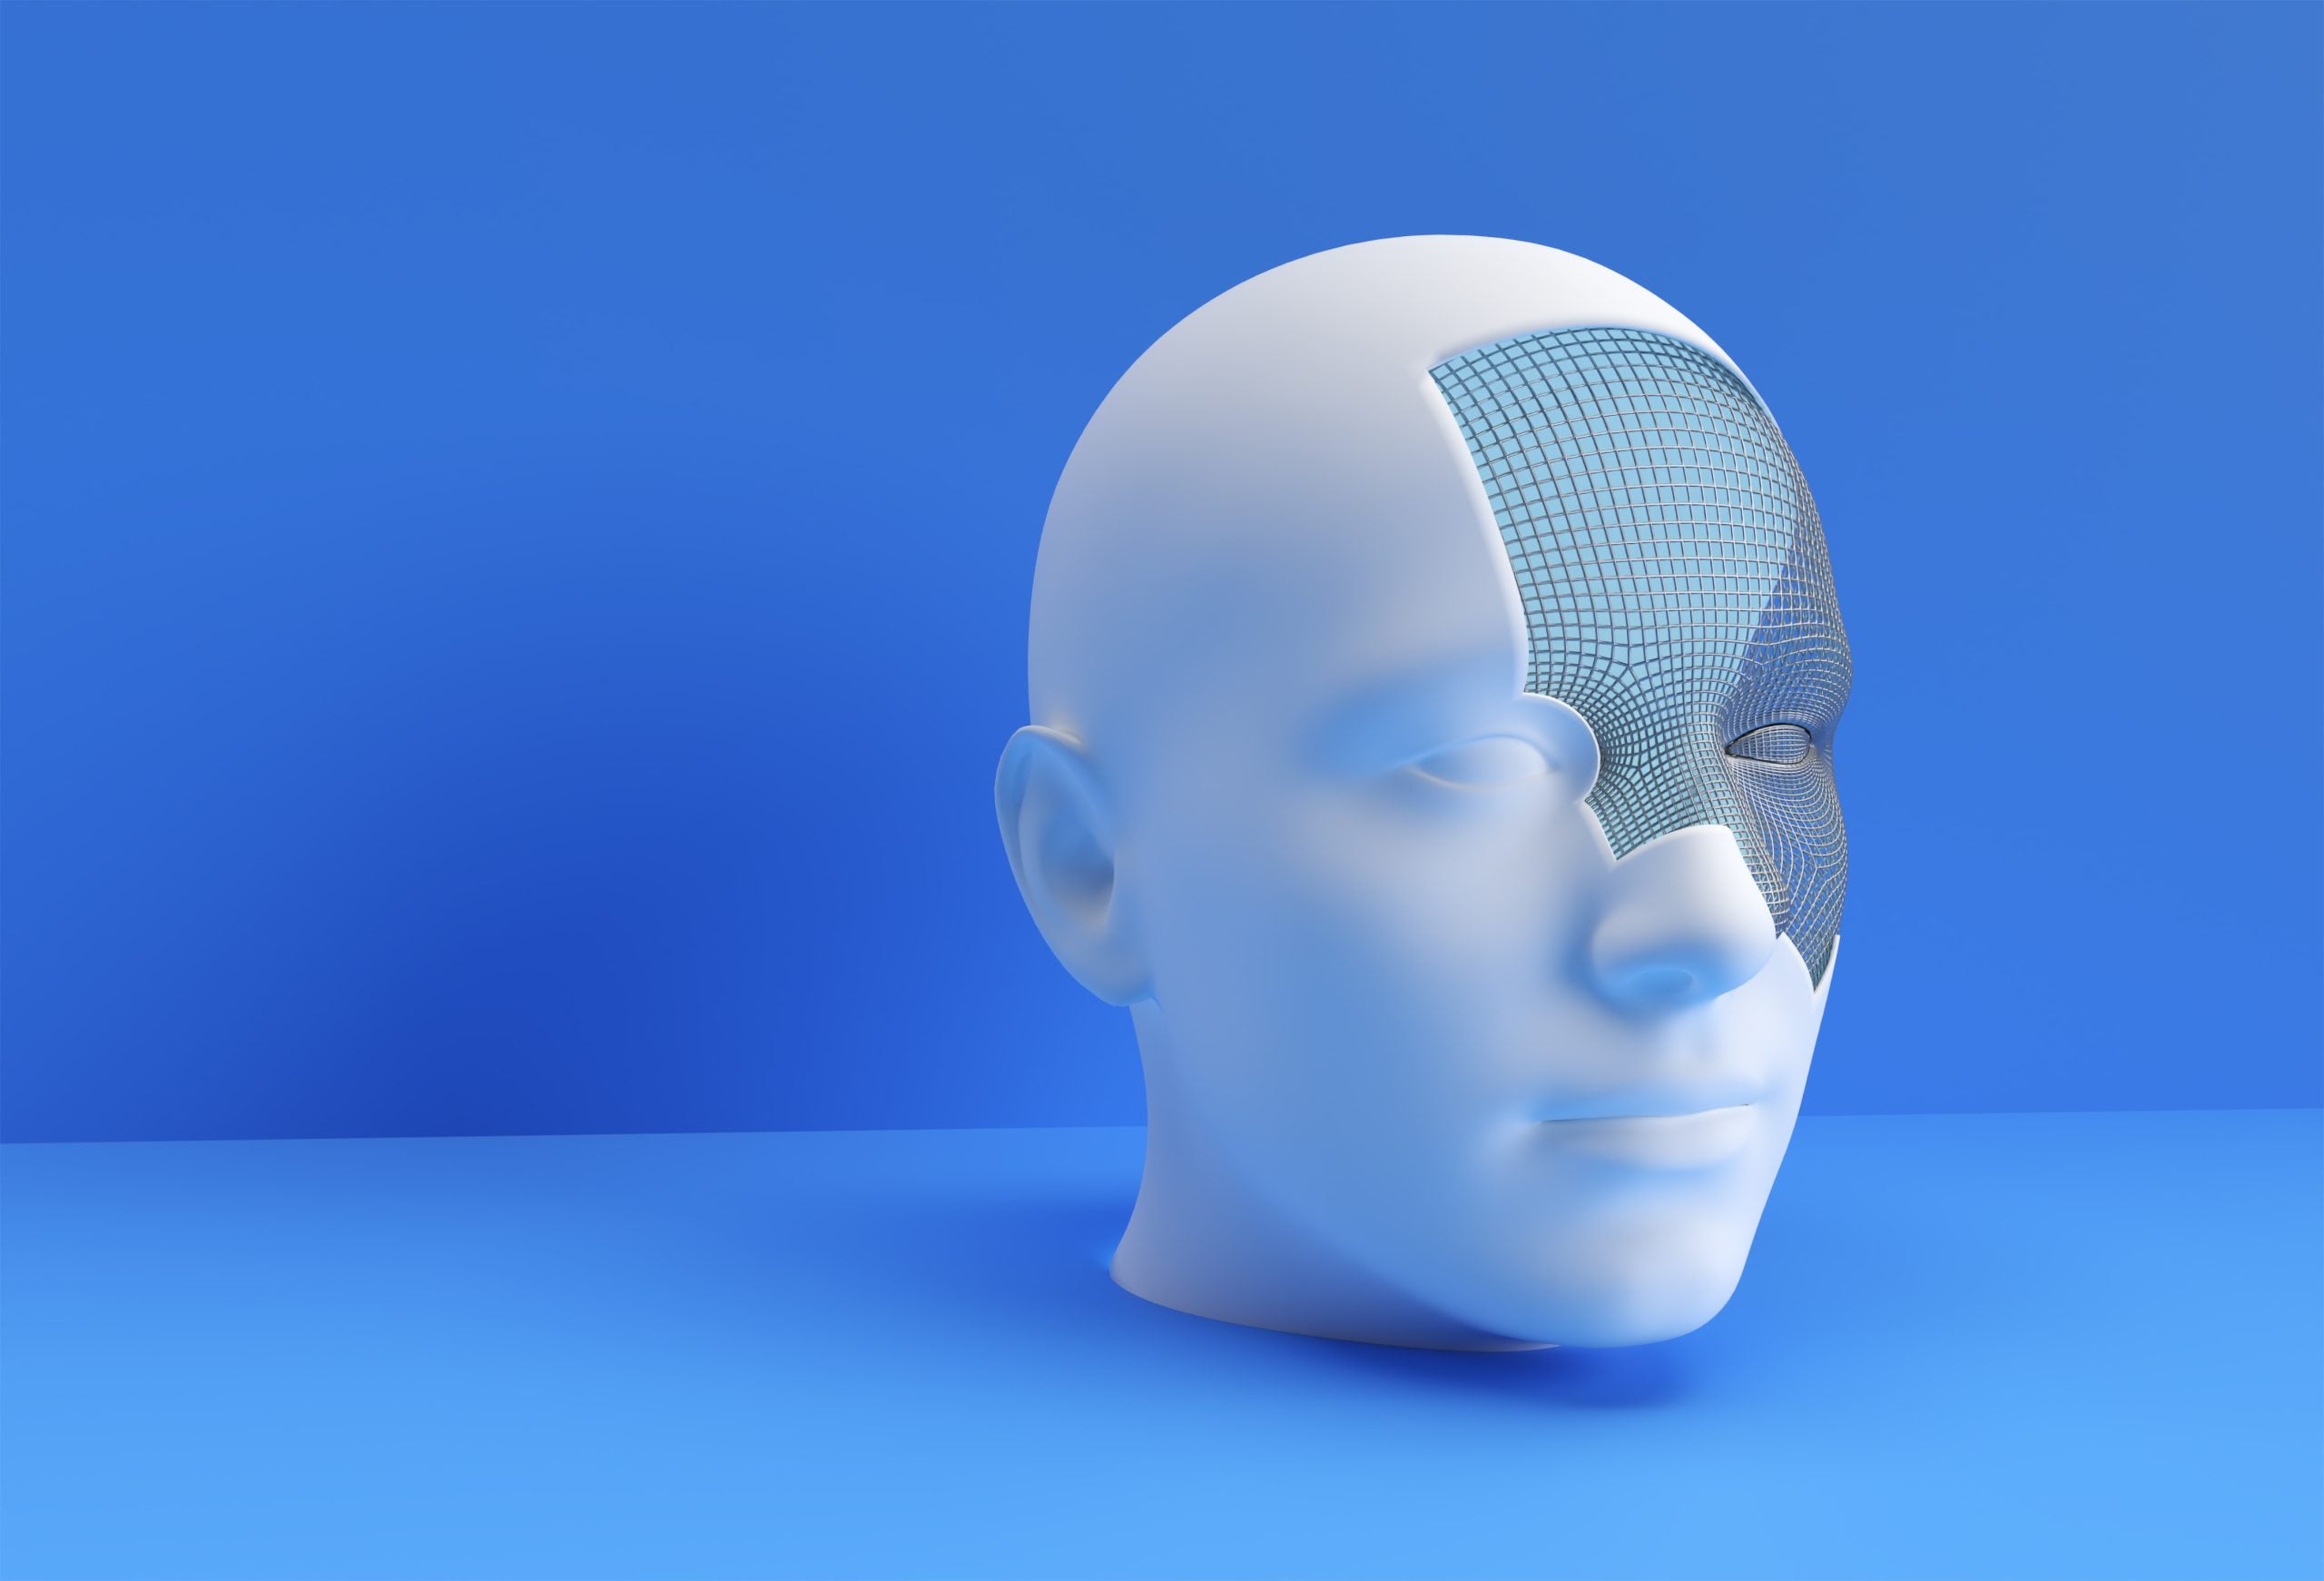 3D Rendered Illustration of a Human Face Design.